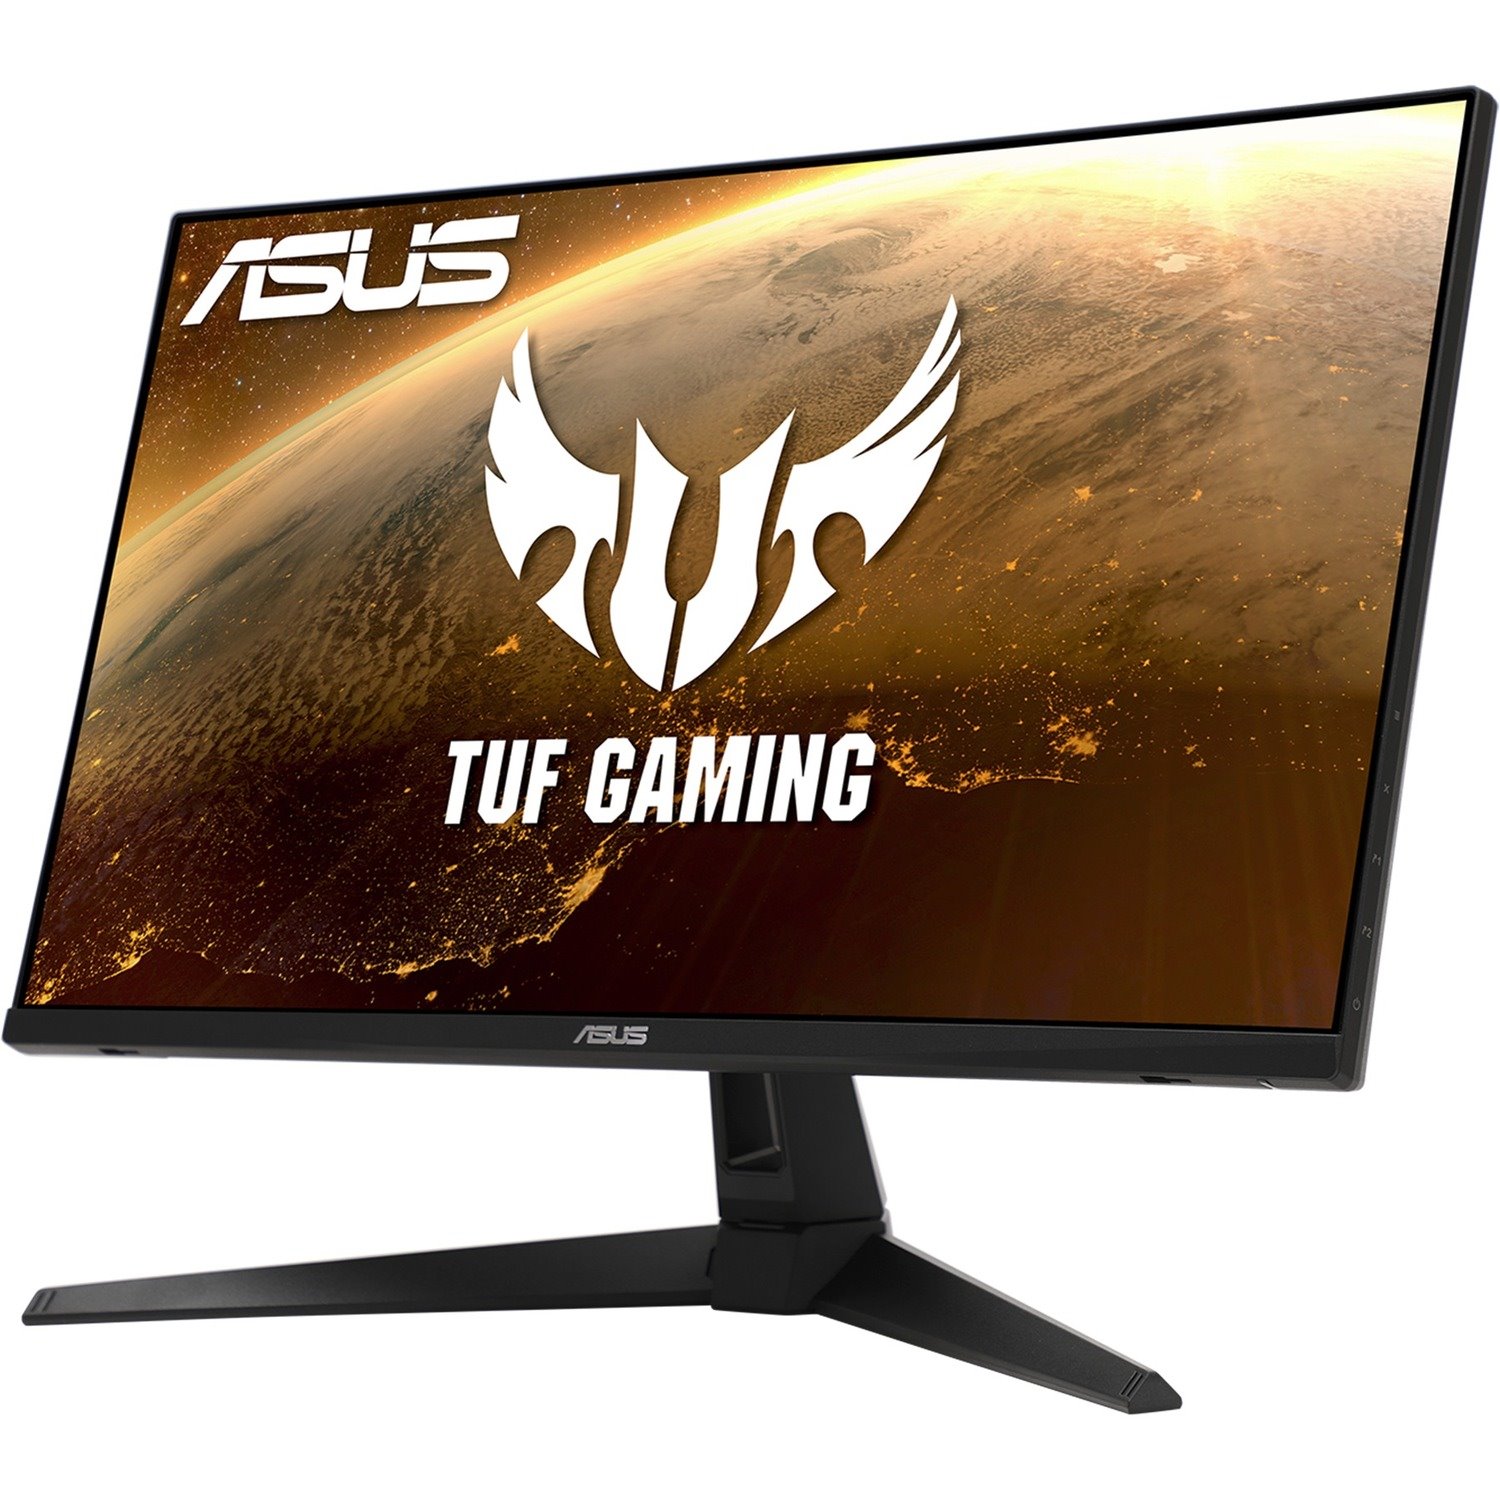 TUF VG279Q1A 27" Class Full HD Gaming LCD Monitor - 16:9 - Black